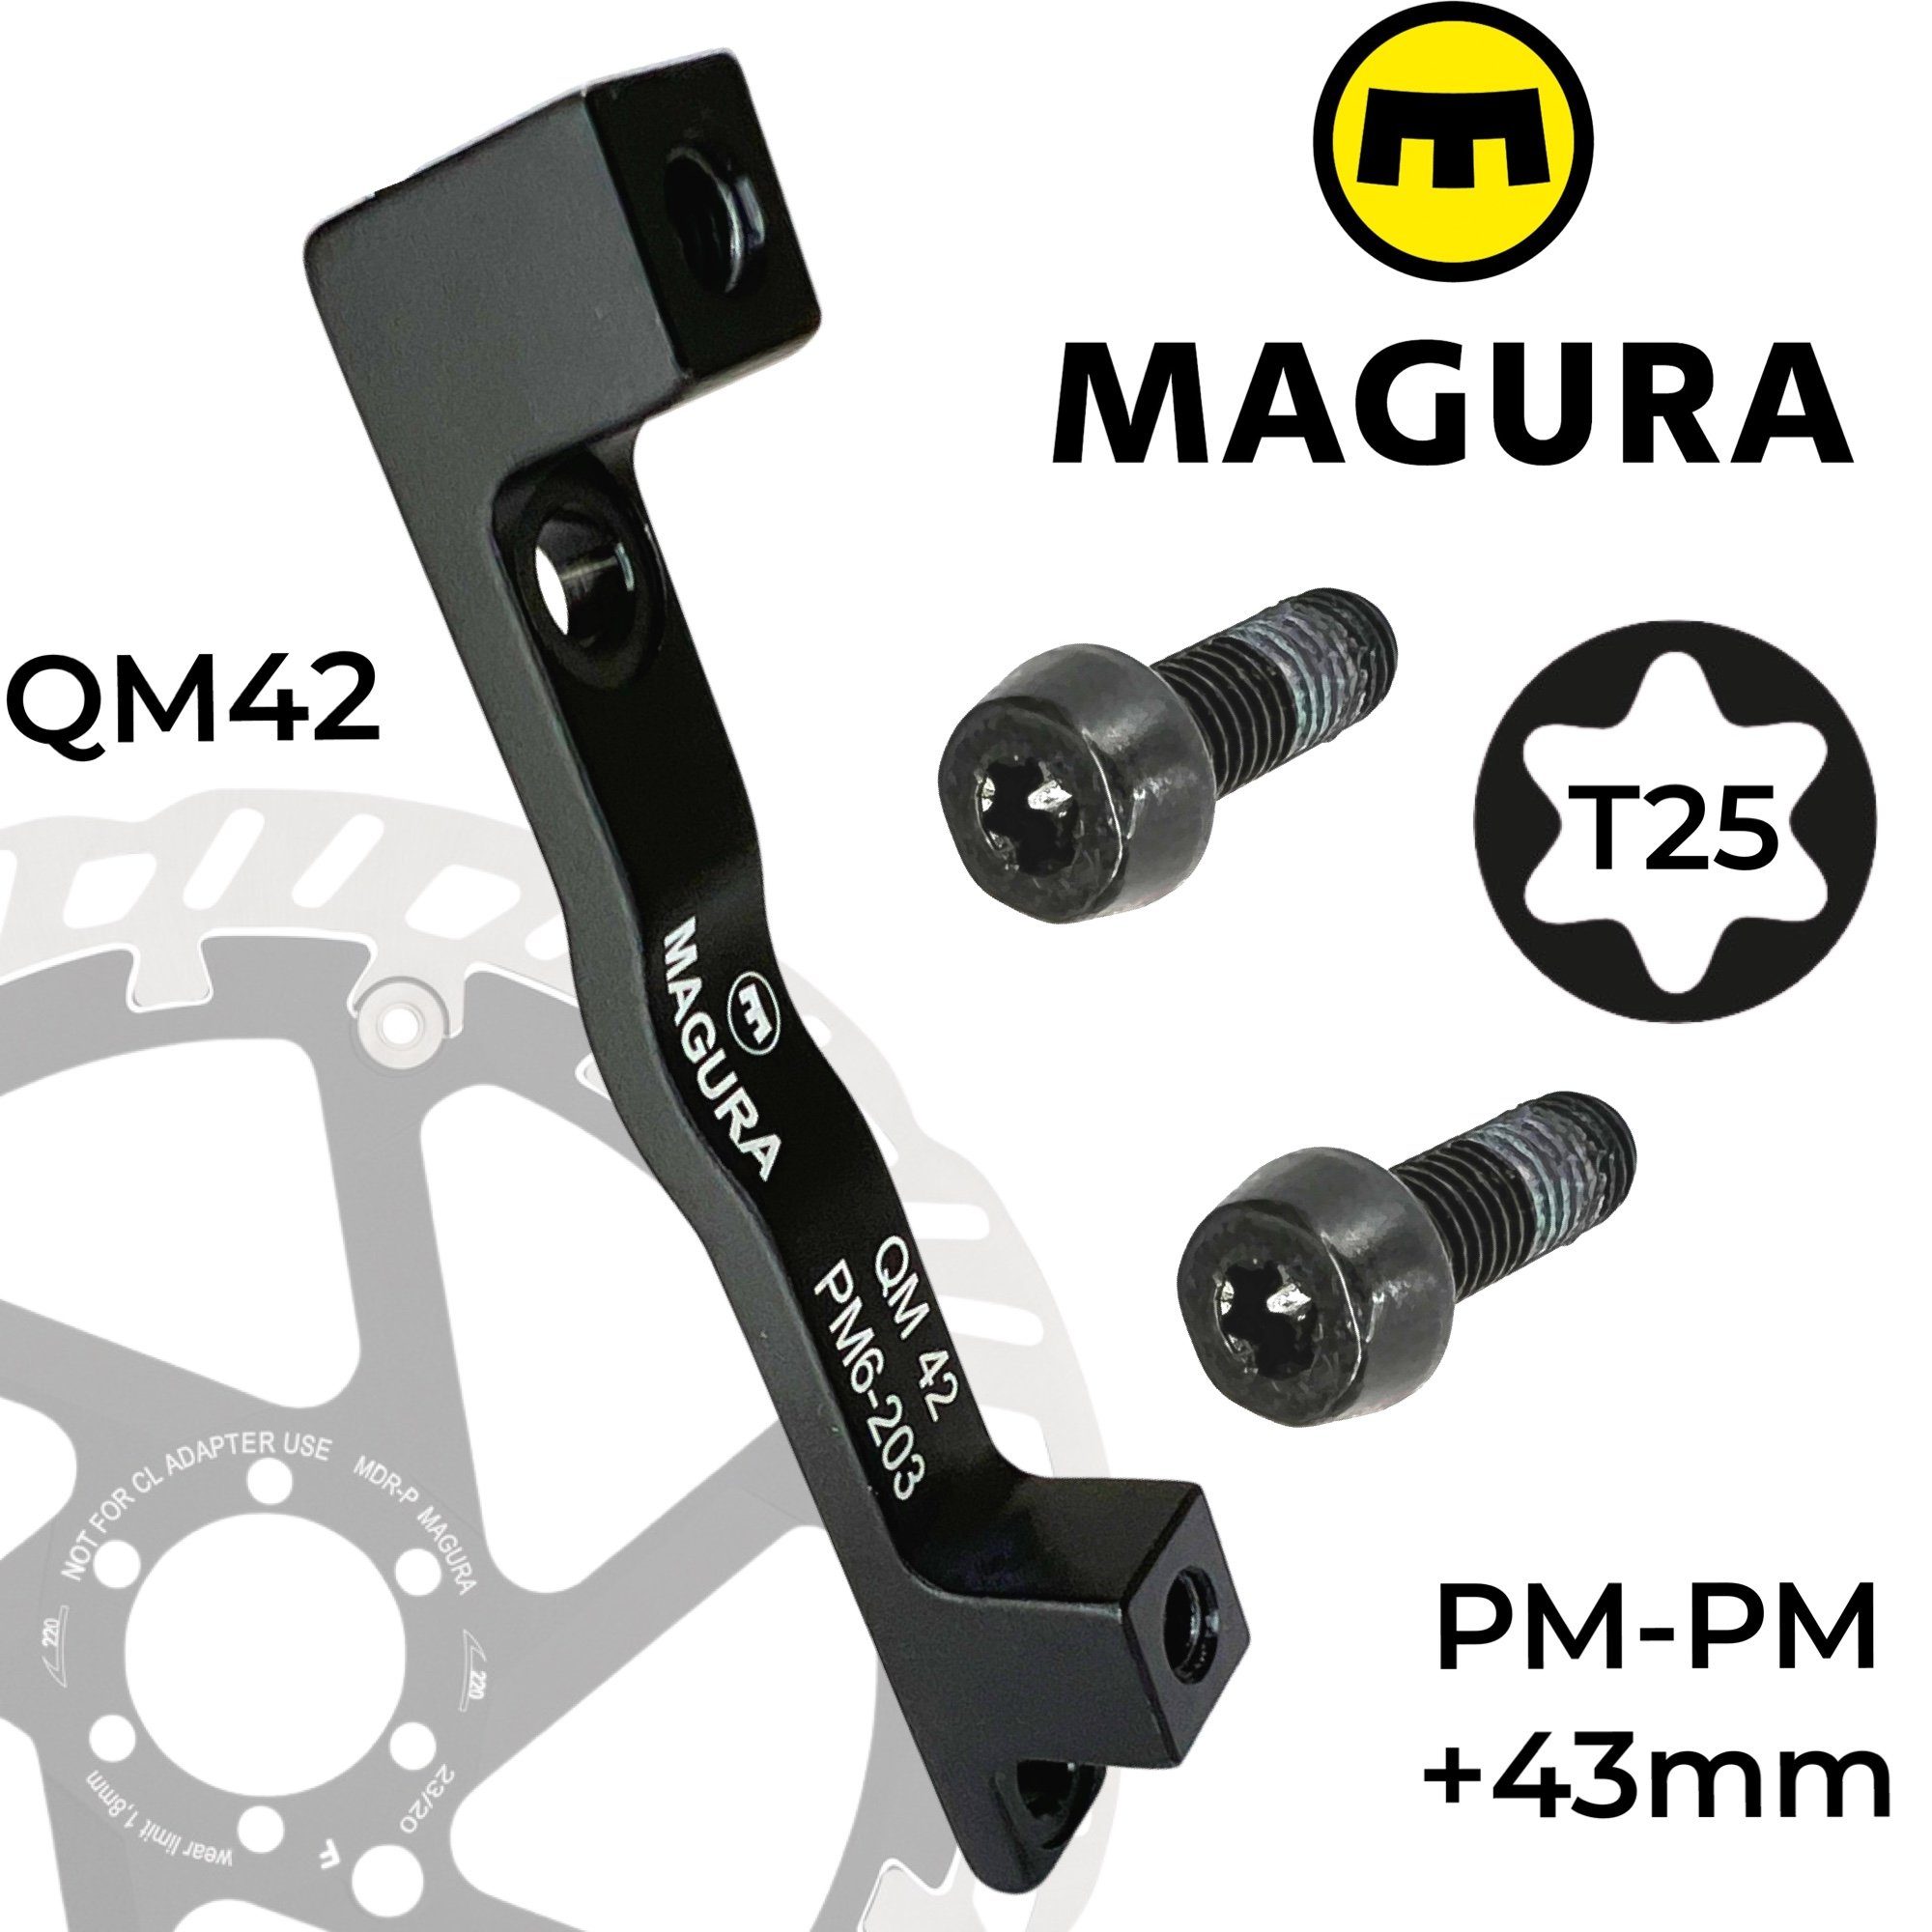 Magura Scheibenbremse Magura Bremsscheiben Adapter +43mm PM QM42 160-203